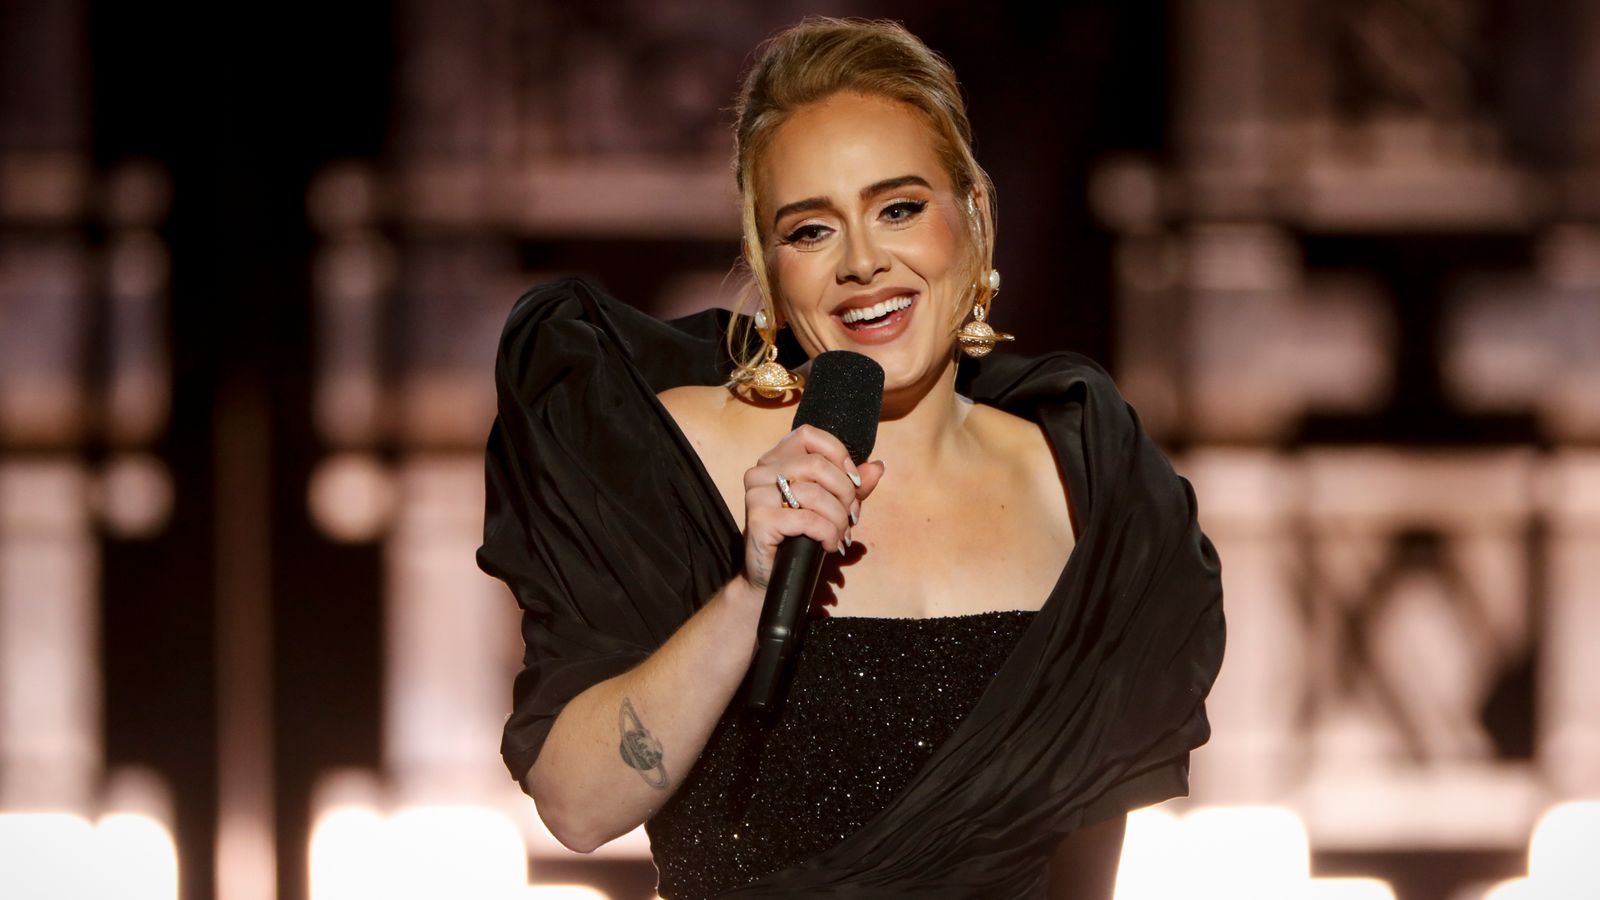 Adele berbicara tentang perceraian, putranya, dan penurunan berat badan dalam wawancara Oprah menjelang album baru |  Berita Ent & Seni